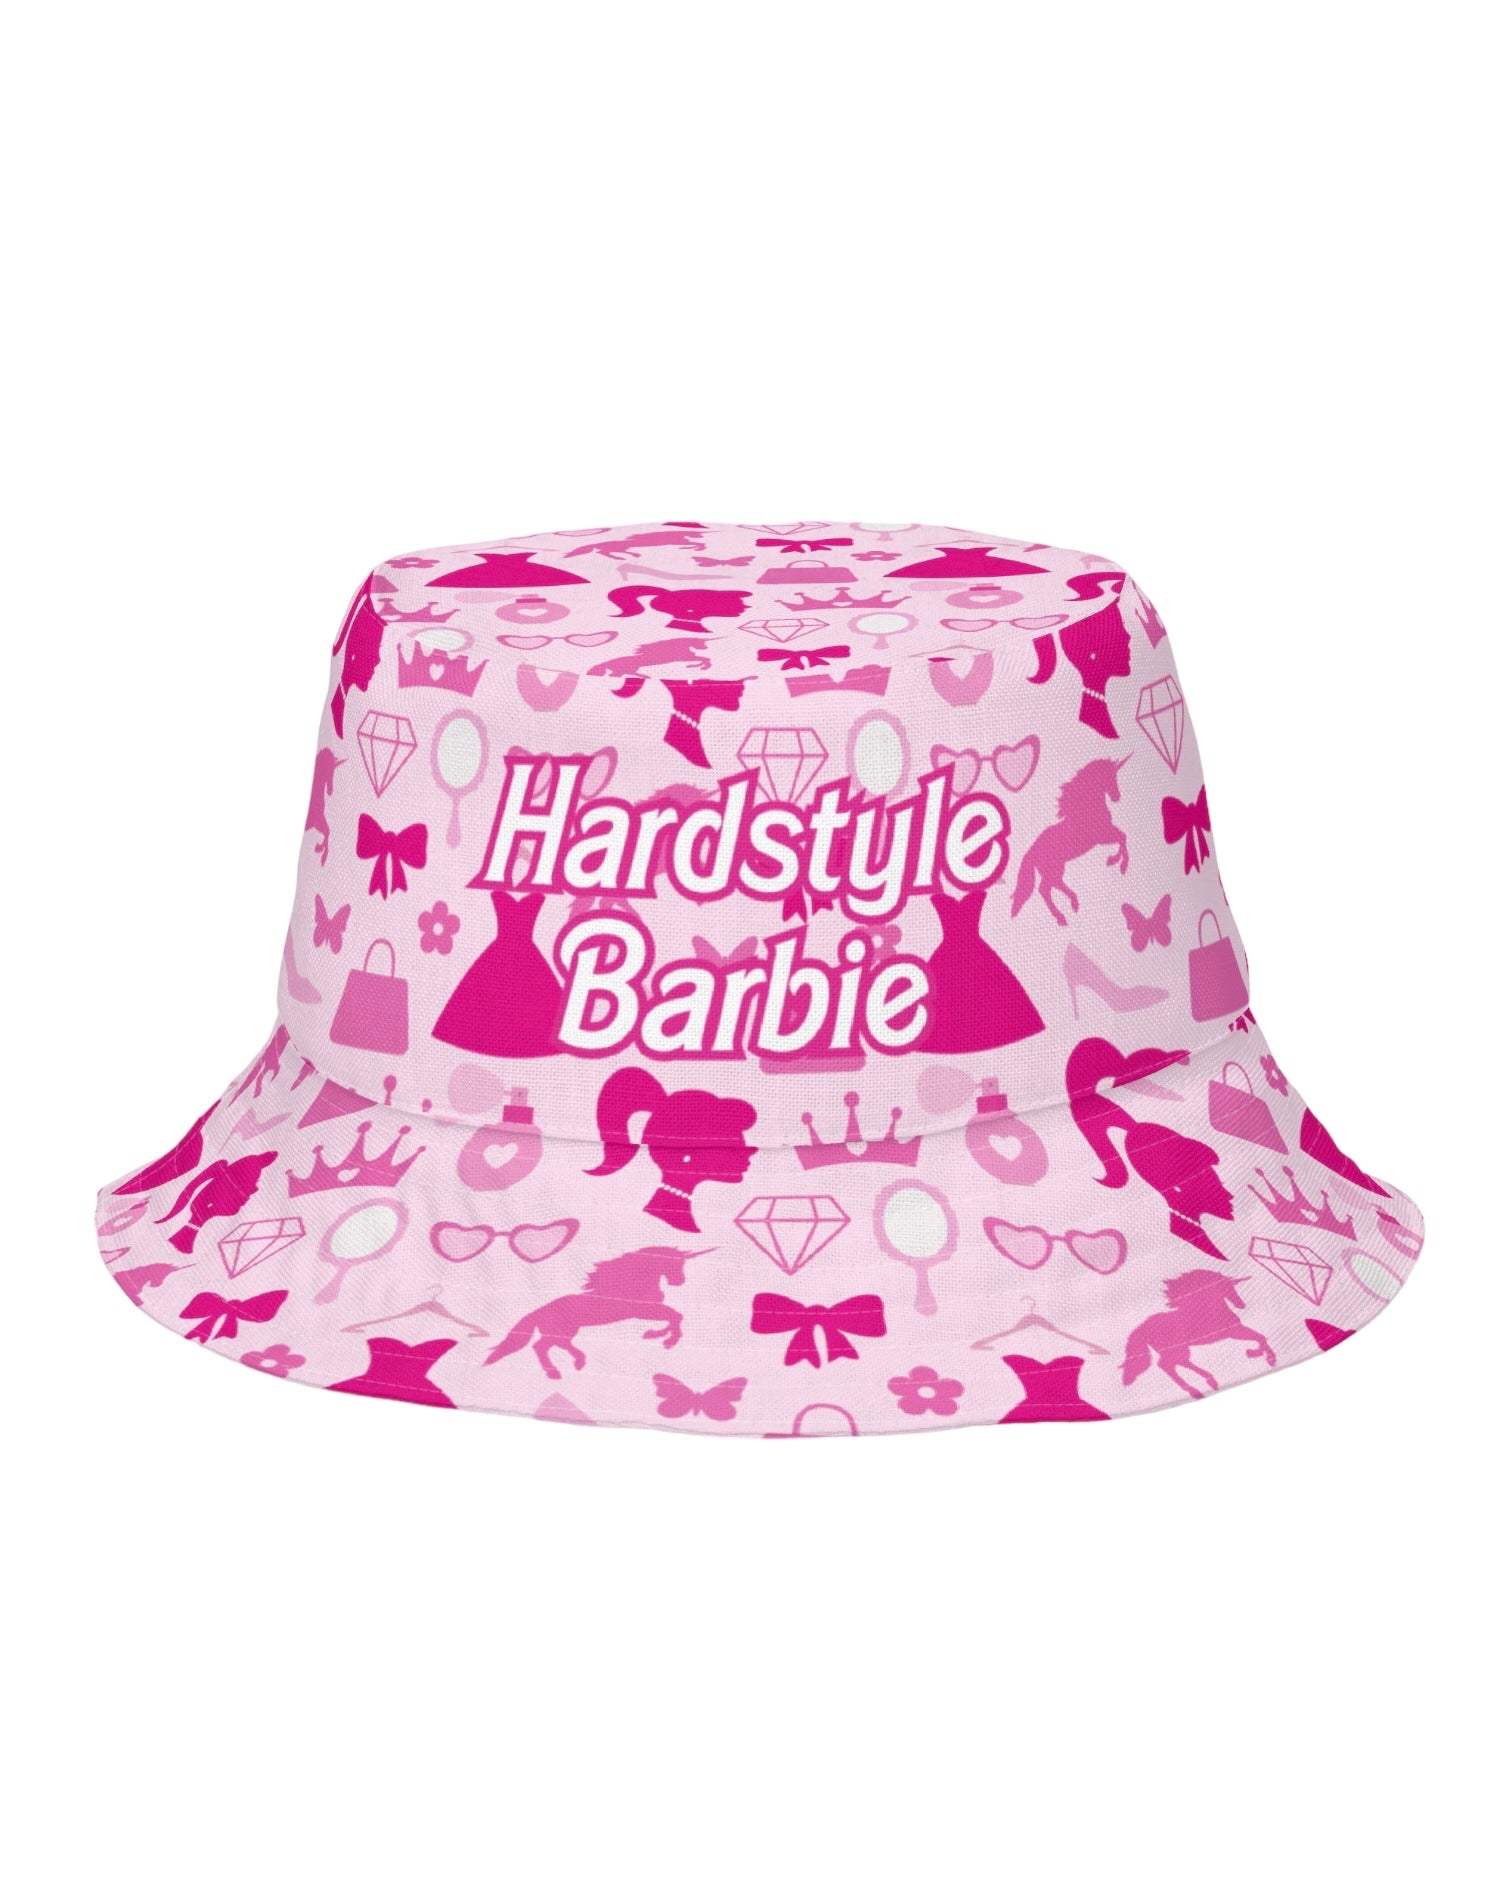 Hardstyle Barbie Reversible Bucket Hat